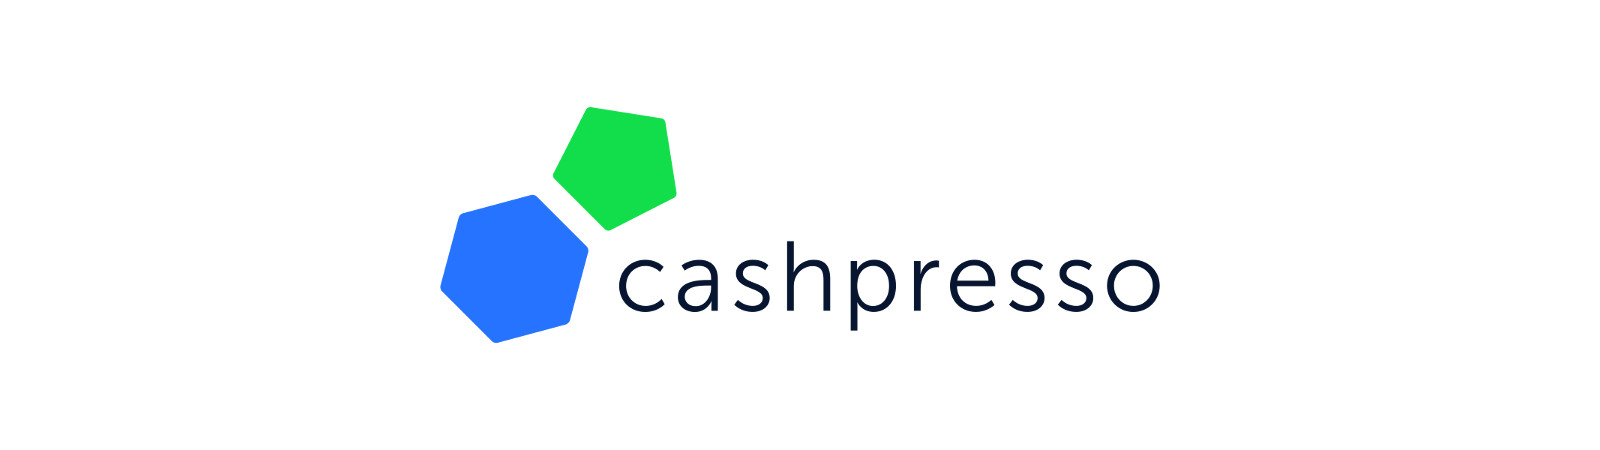 Das Cashpresso Logo